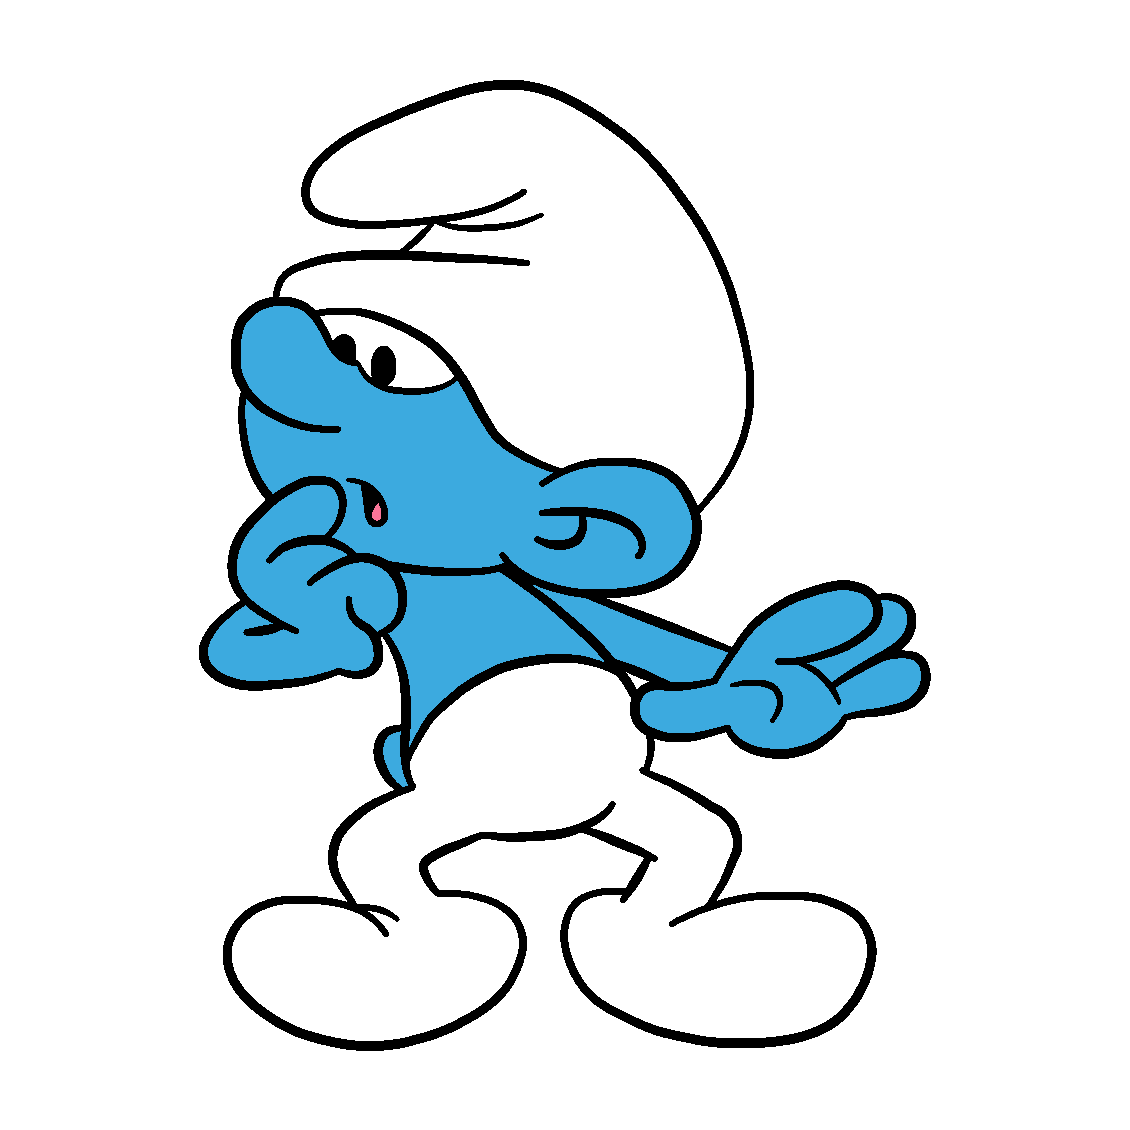 Clumsy Smurf The Smurfs Original Wiki Fandom 2931